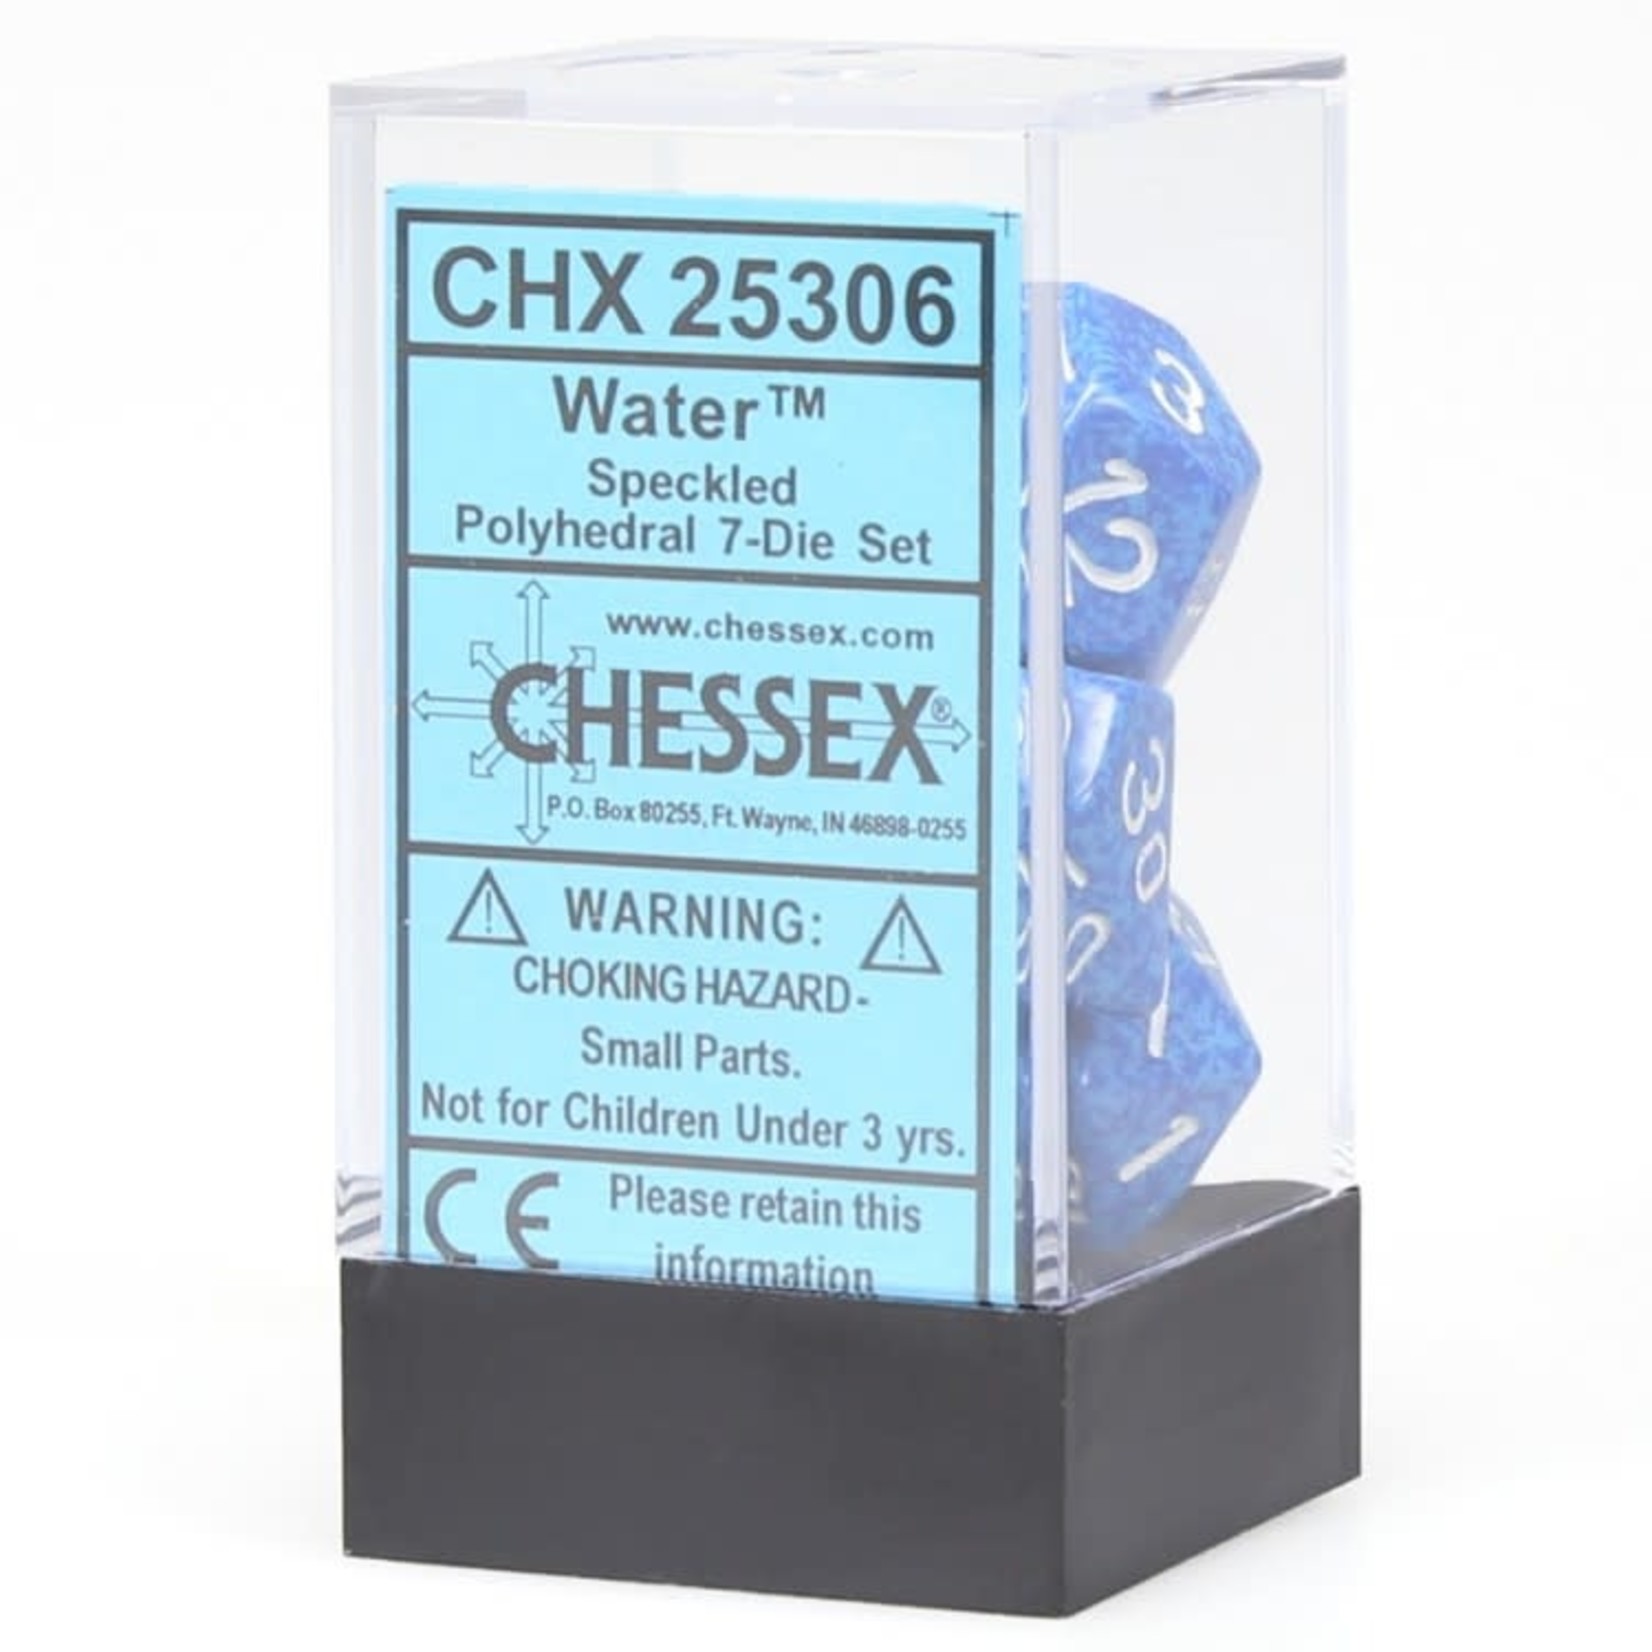 Chessex Chessex Speckled Water Polyhedral 7 die set